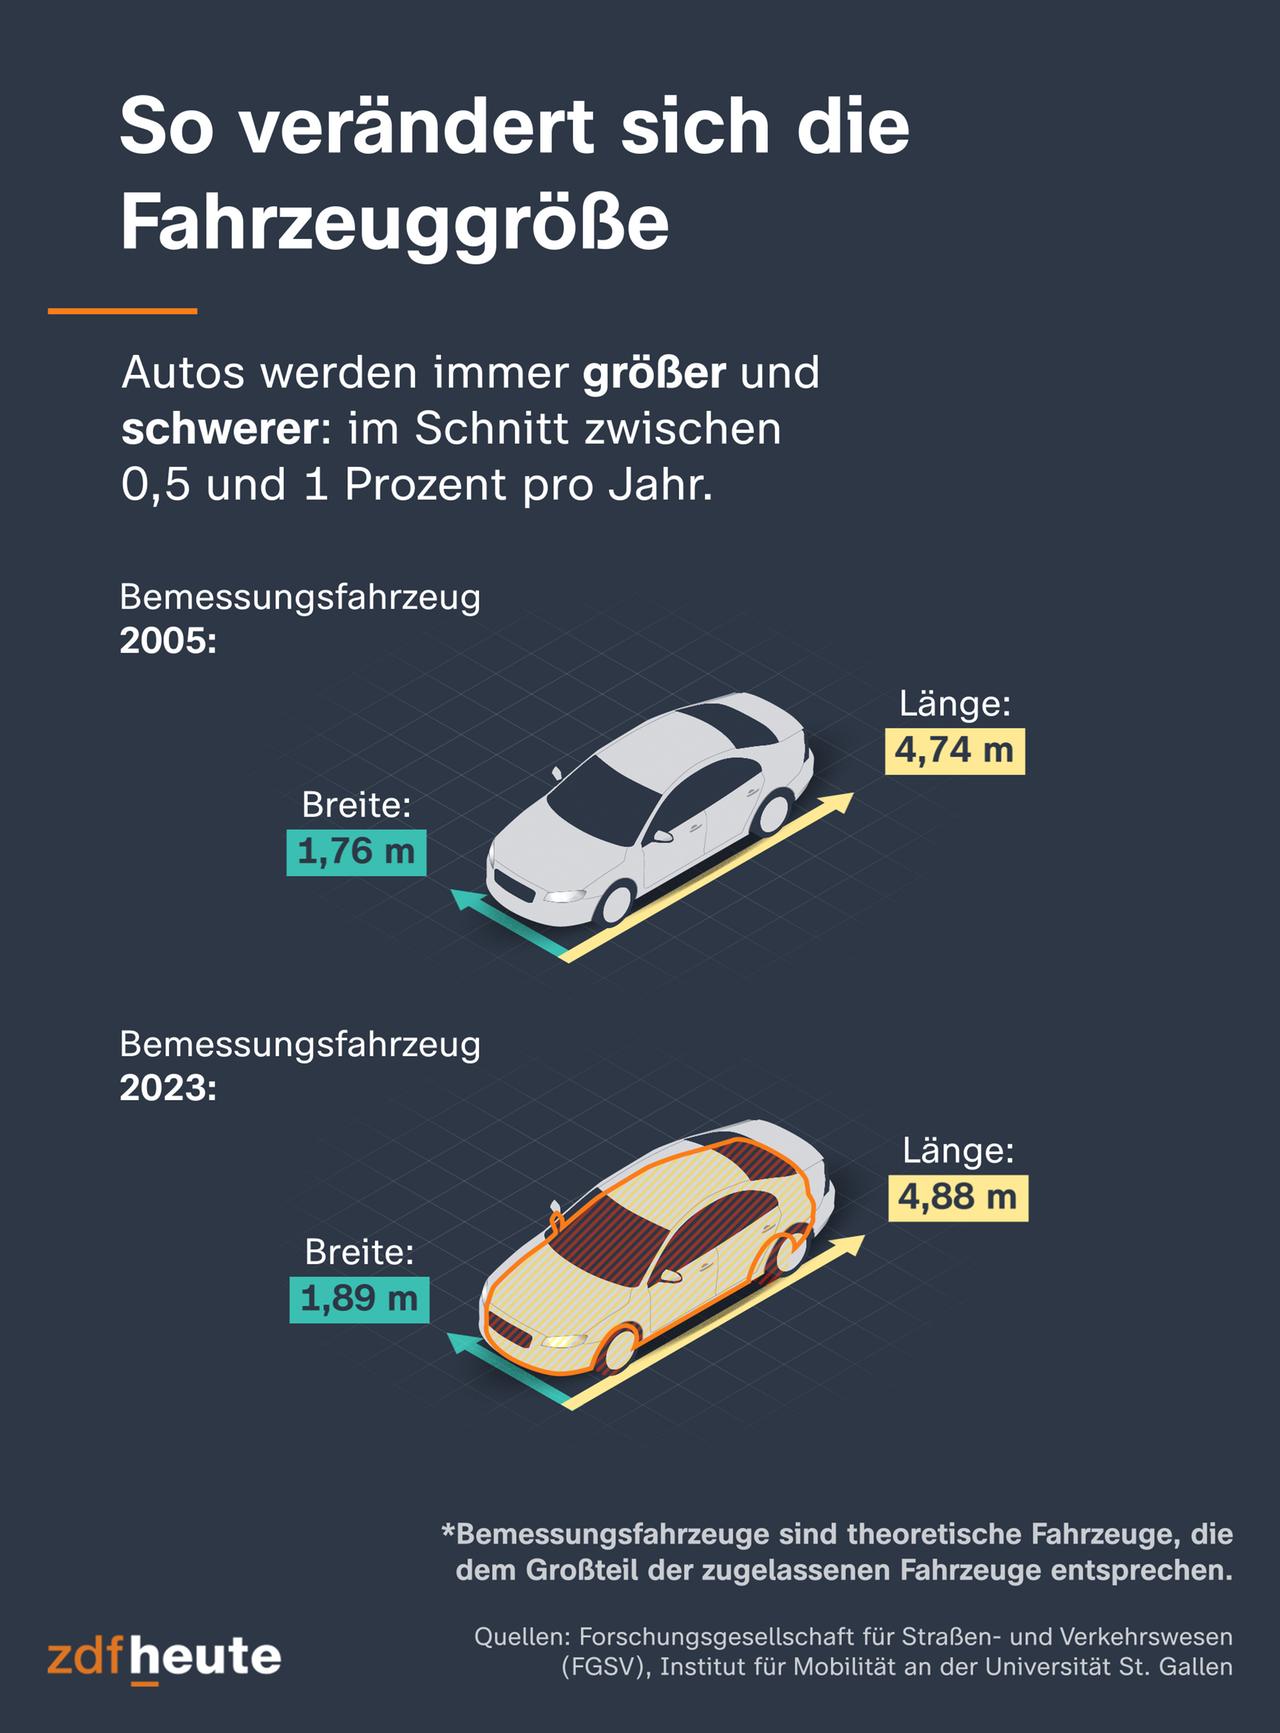 Auf dieser Infografik zeigen wir, wie die Autos über die Jahre gewachsen sind. 